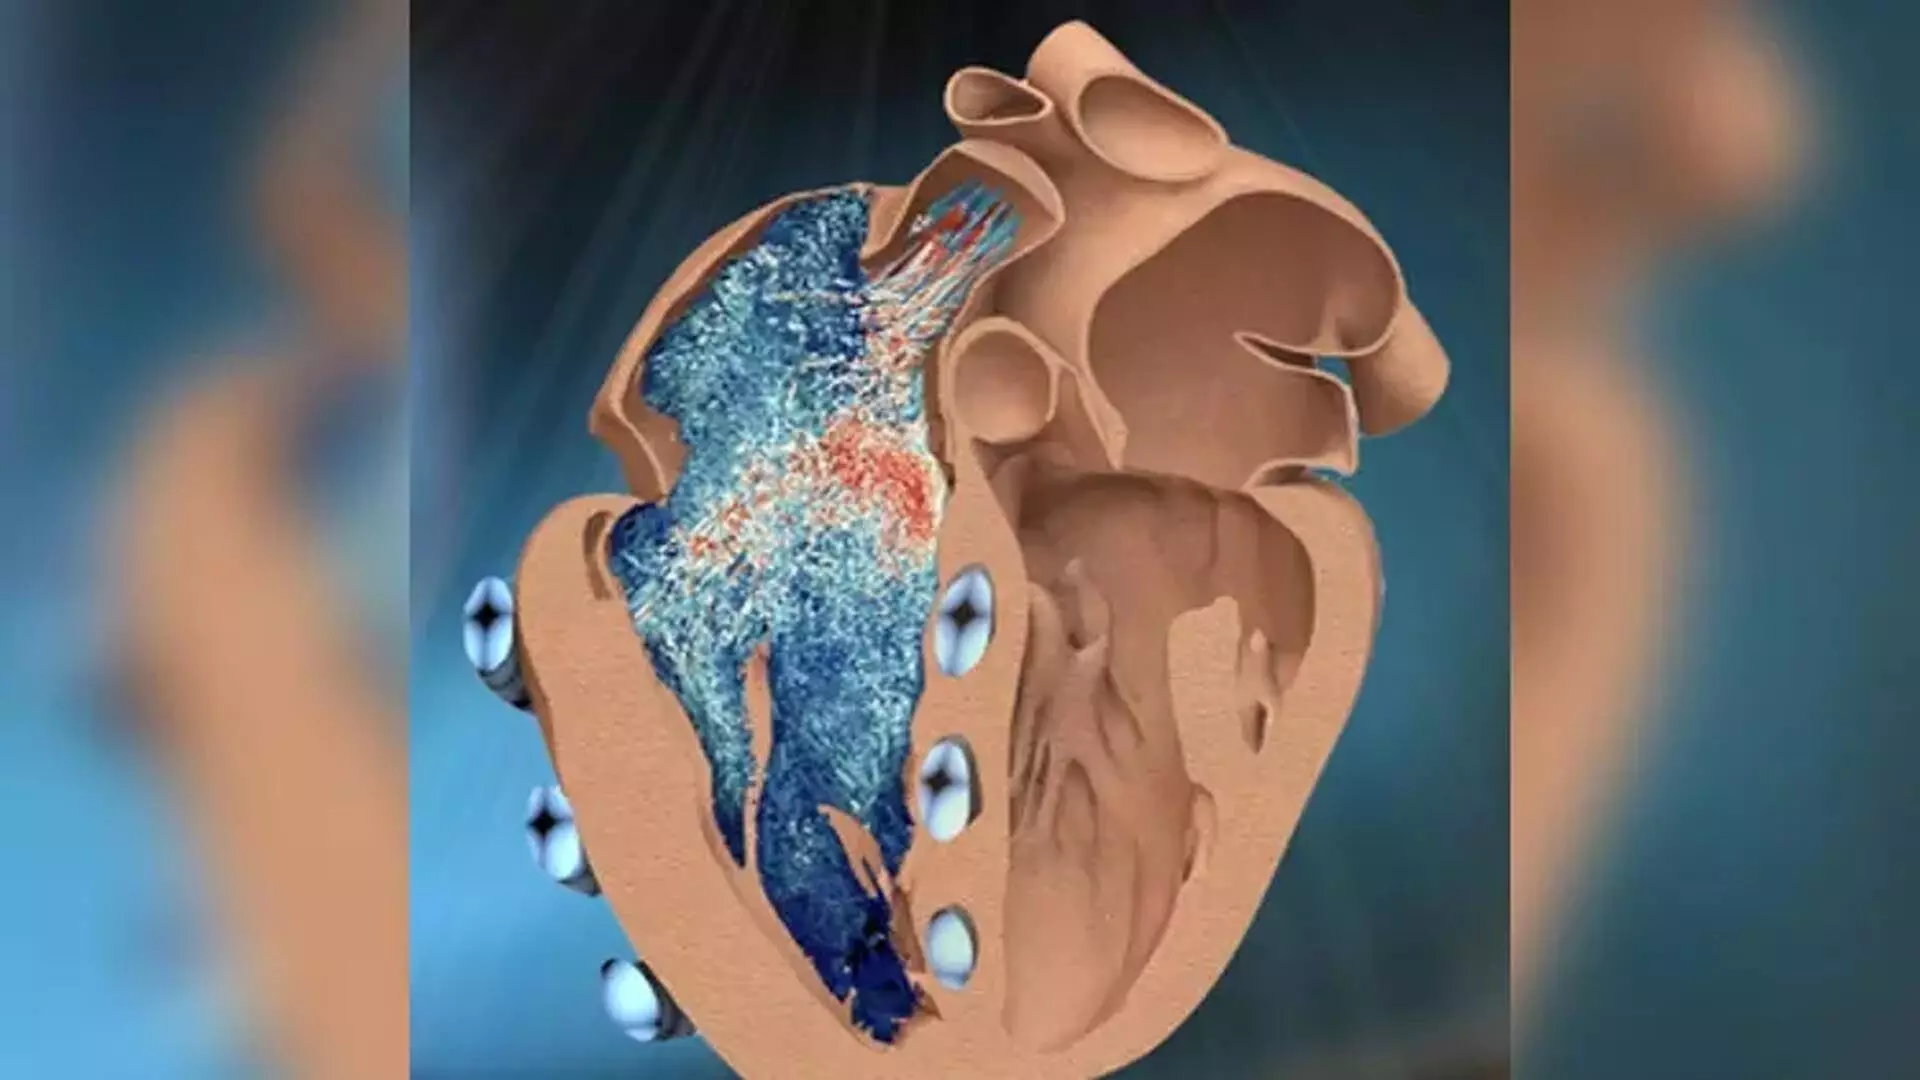 Heart की मांसपेशी कोशिकाओं पर पुनर्योजी प्रभाव डालने में सक्षम प्रमुख वृद्धि कारक की खोज